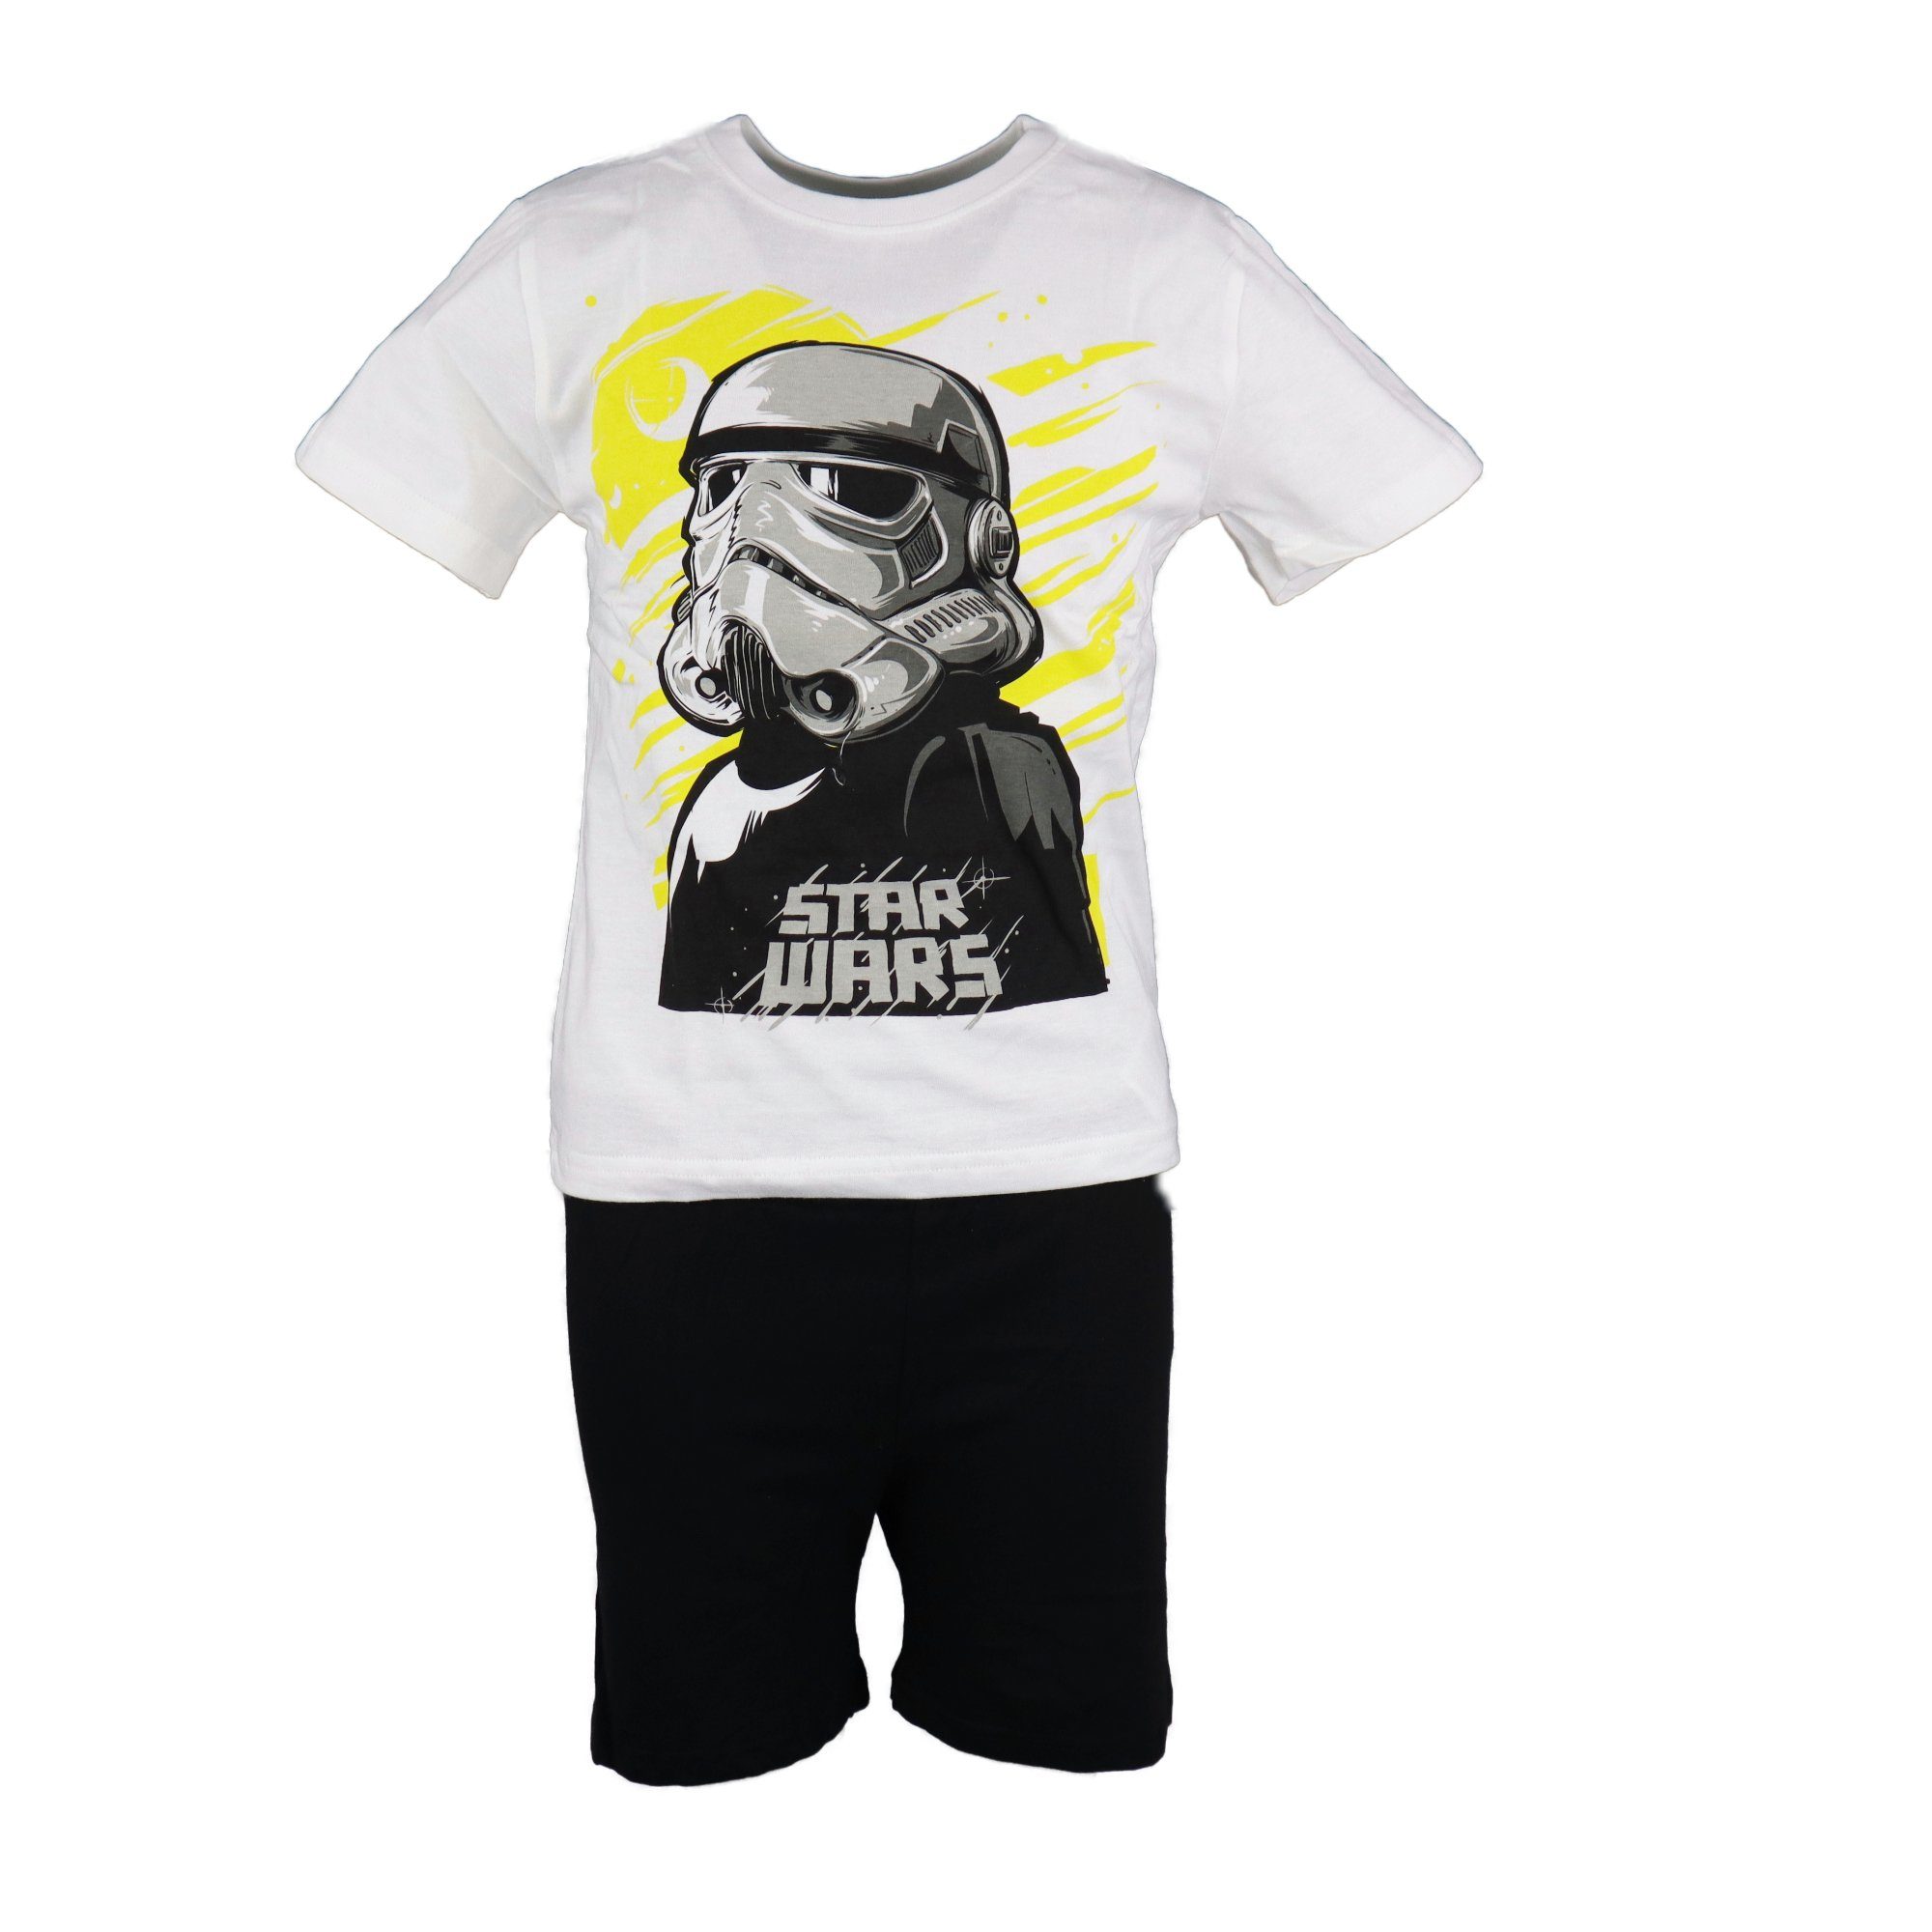 Star Wars Schlafanzug Storm Trooper Kinder Pyjama kurz Gr. 110 bis 140, 100% Baumwolle Schwarz